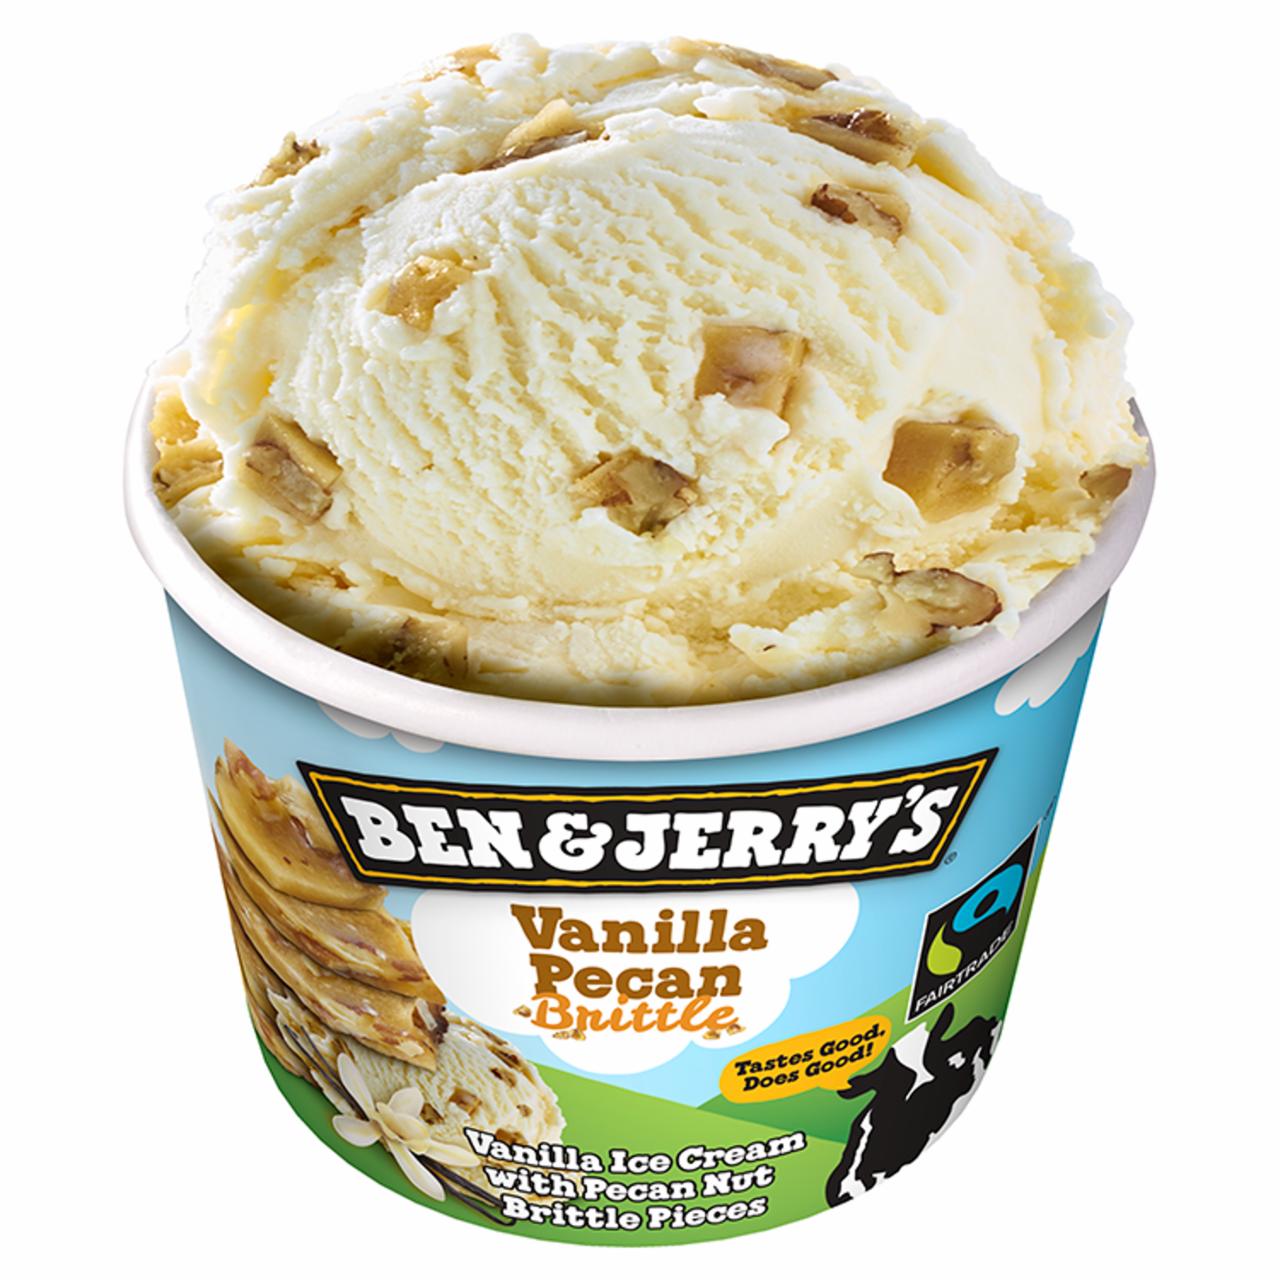 Képek - Ben & Jerry's Vanilla Pecan jégkrém 100 ml